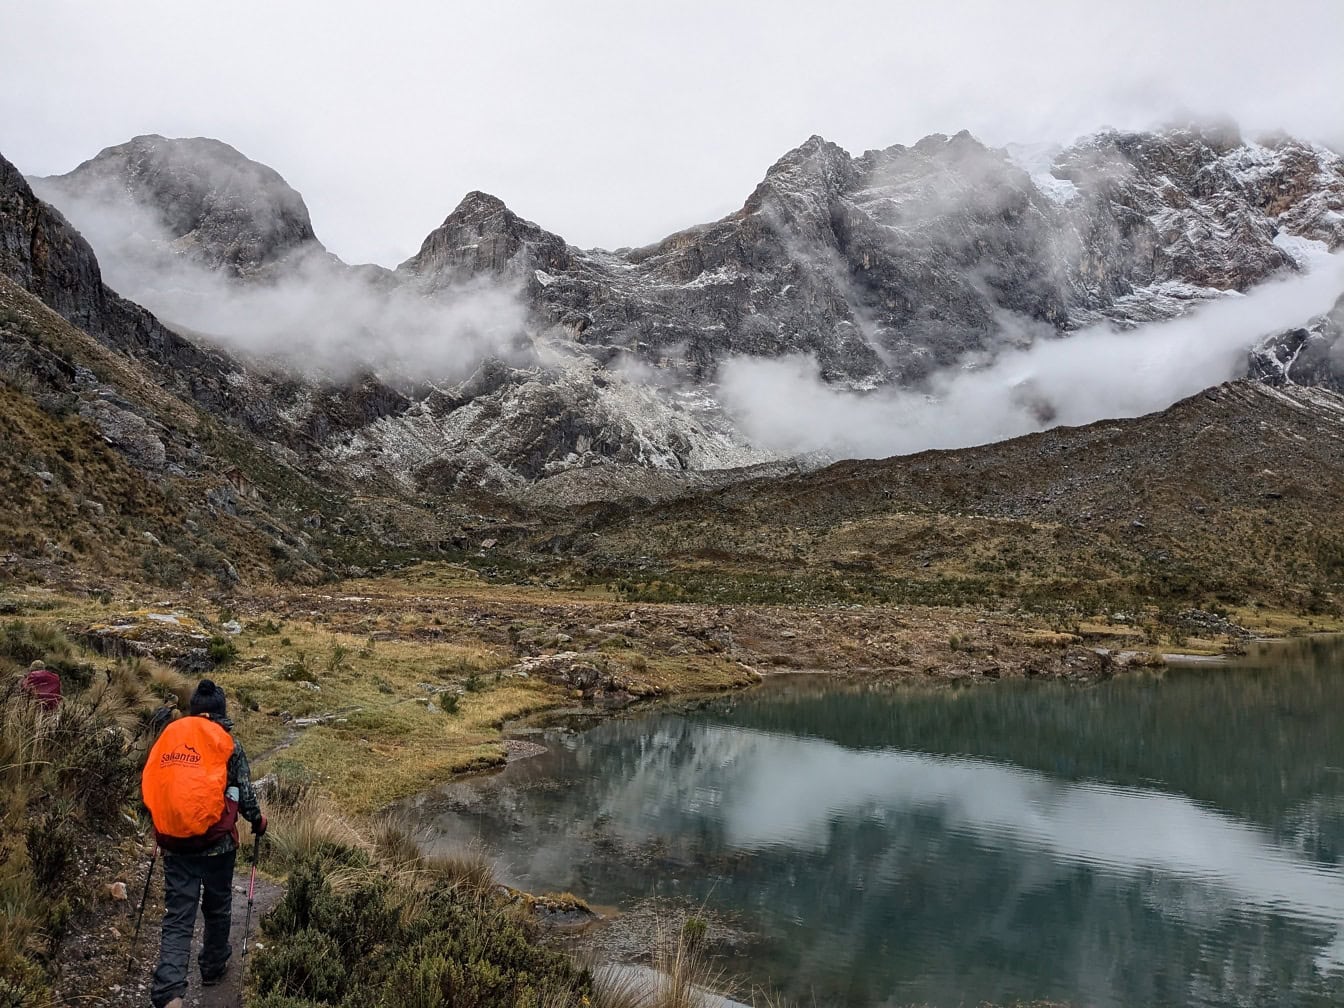 Persoană care merge pe o cărare lângă un lac din munți, la pasul Paso de Carhuac din lanțul muntos Cordillera Huayhuash din Peru